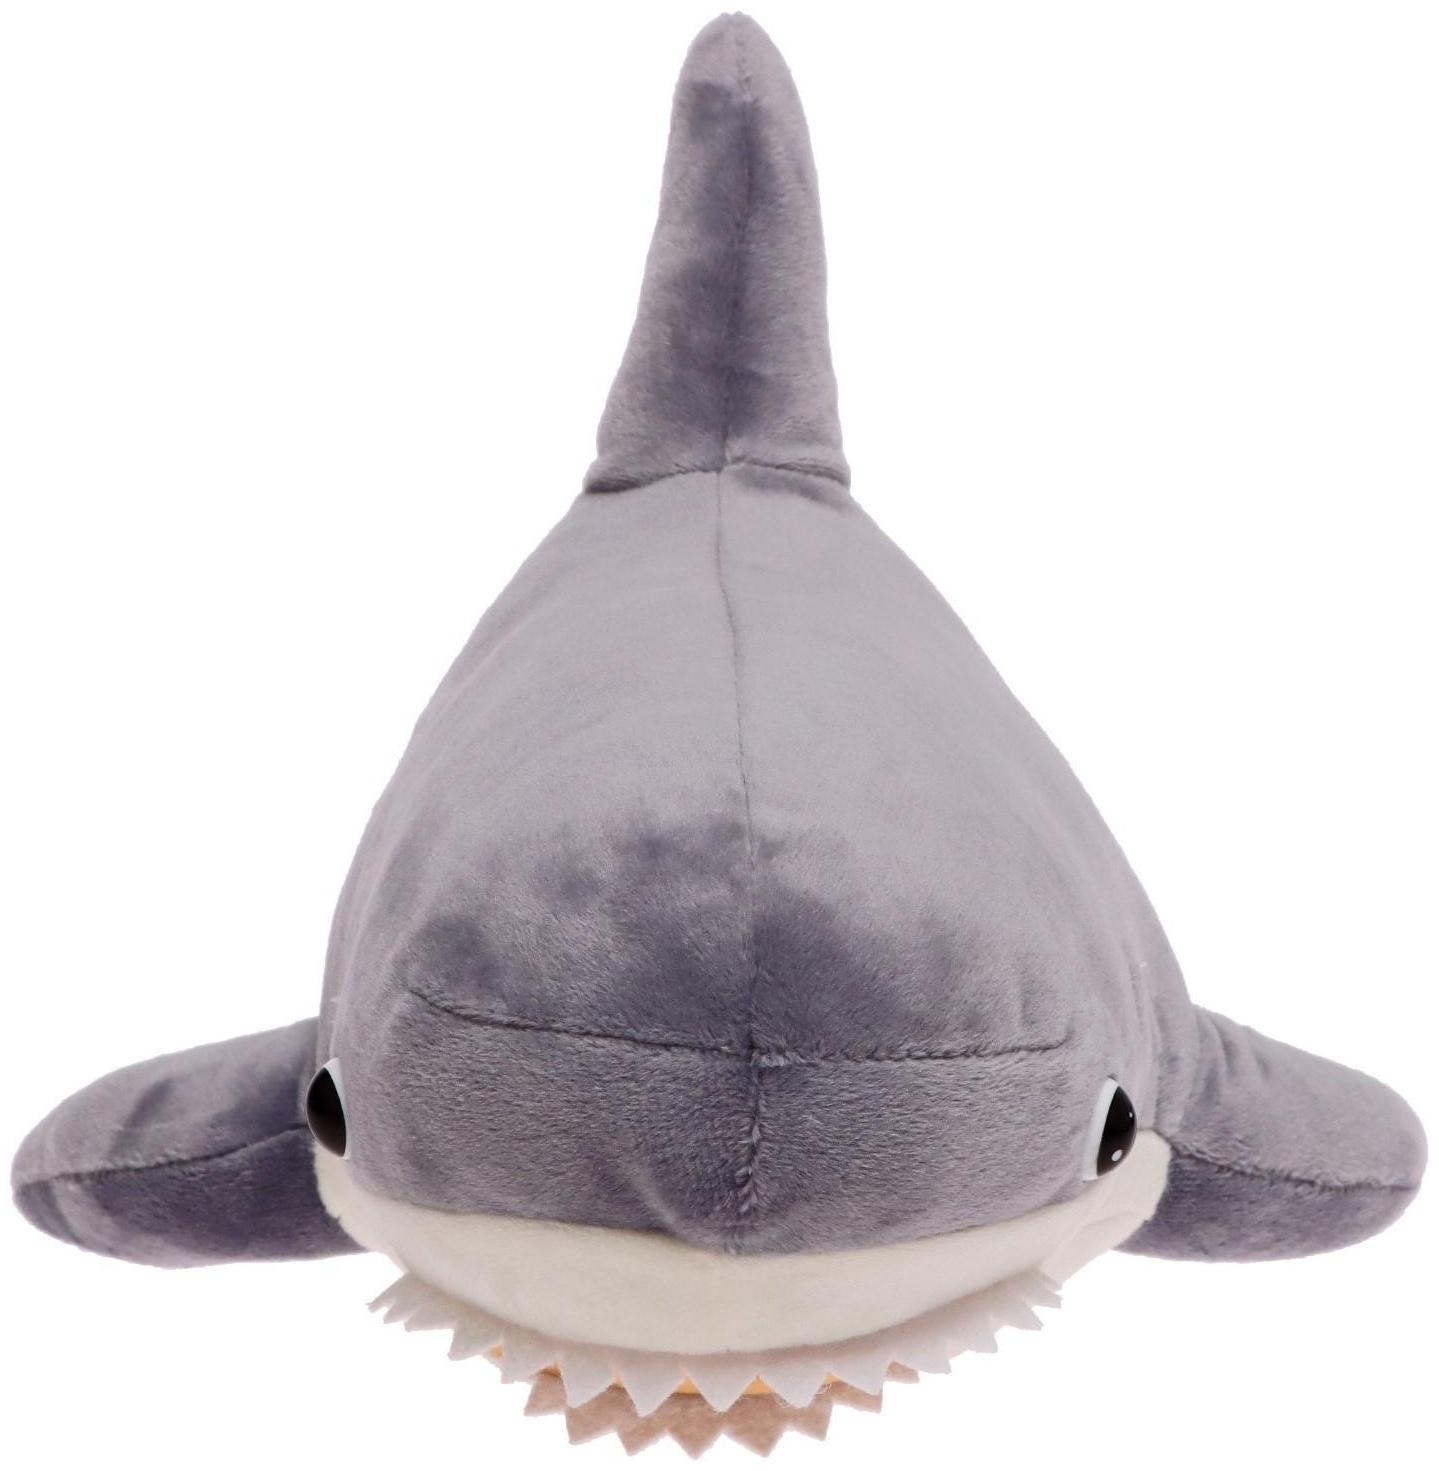 Мягкая игрушка «Акула», цвет серый, 50 см